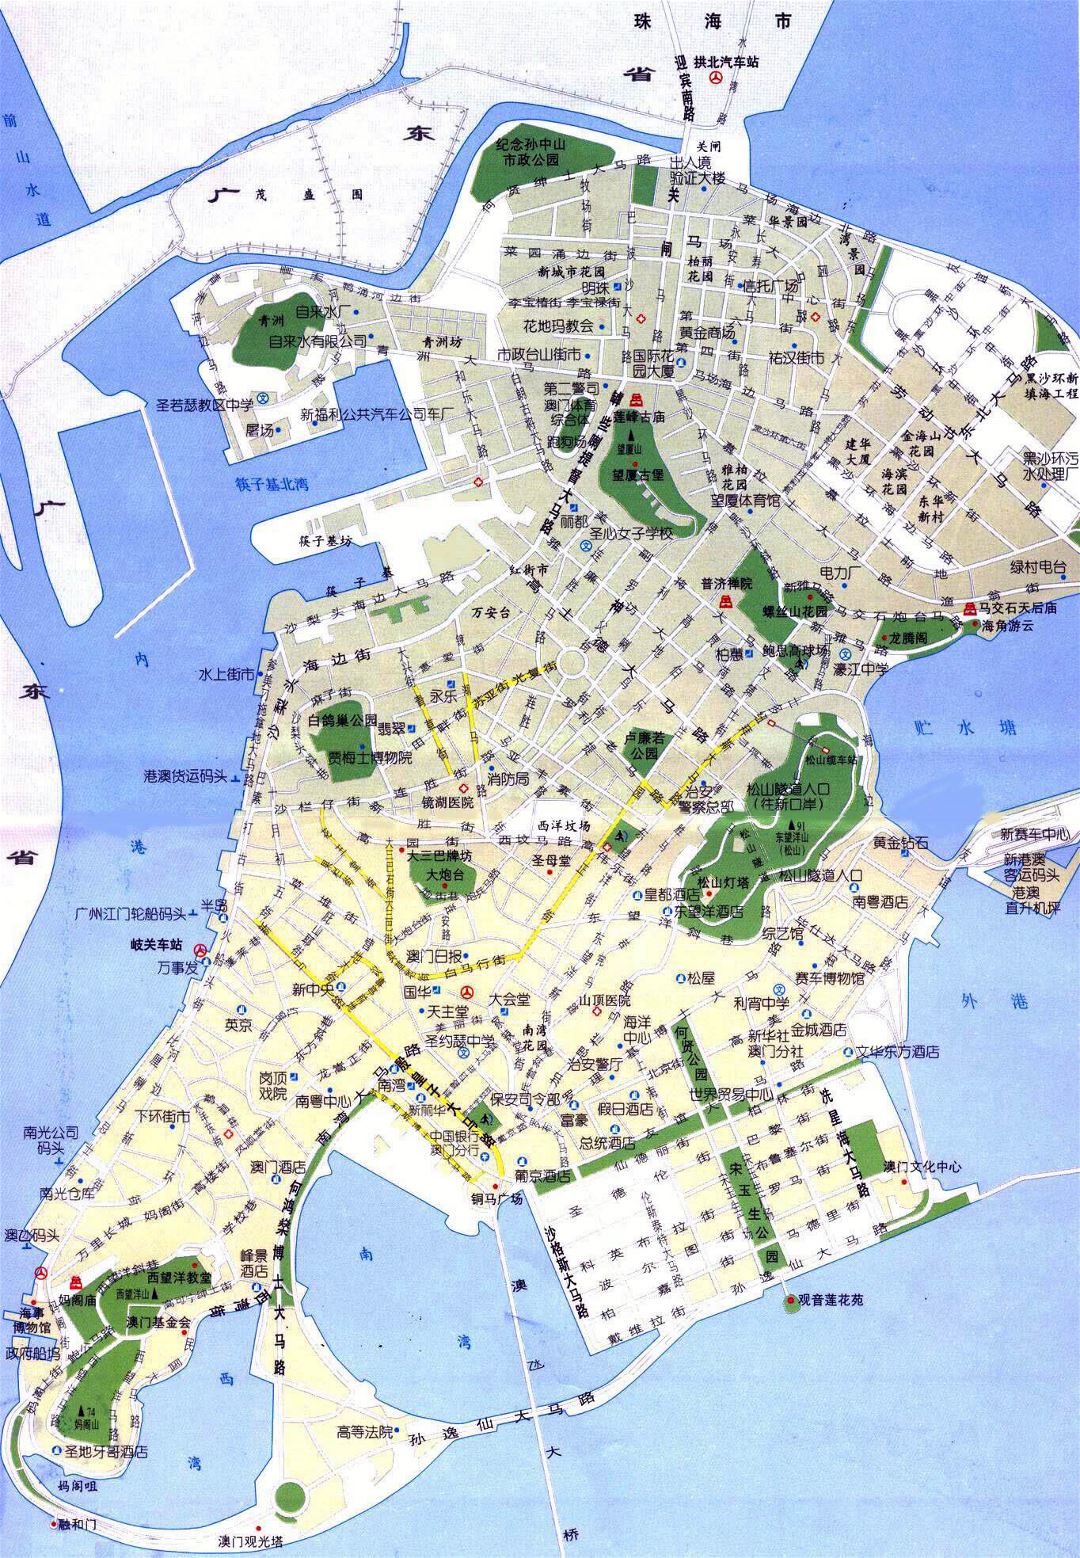 Grande detallado hoja de ruta de Macao en chino